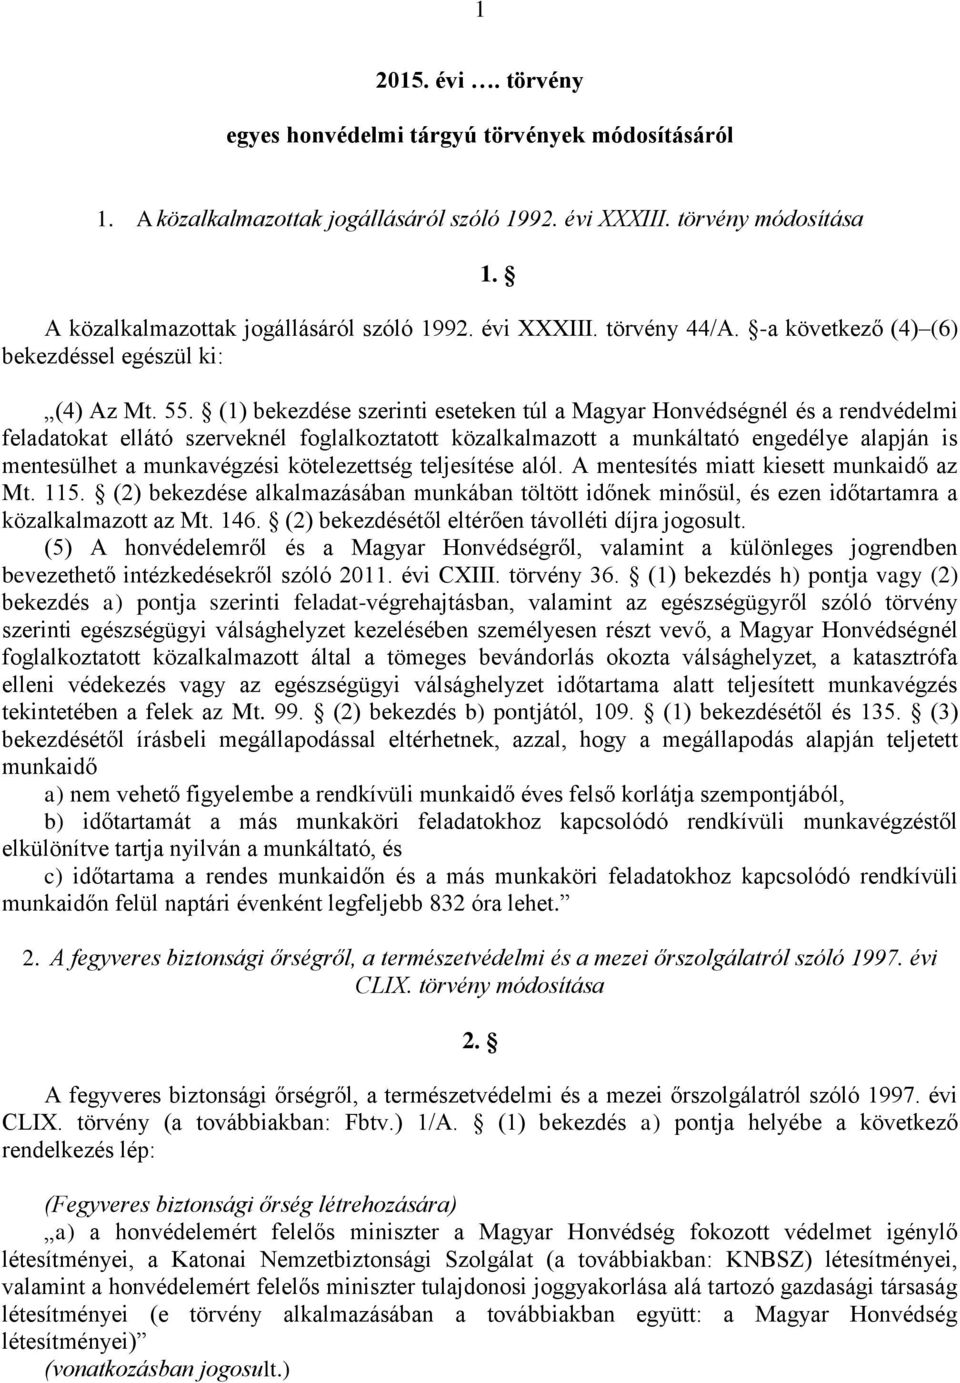 (1) bekezdése szerinti eseteken túl a Magyar Honvédségnél és a rendvédelmi feladatokat ellátó szerveknél foglalkoztatott közalkalmazott a munkáltató engedélye alapján is mentesülhet a munkavégzési